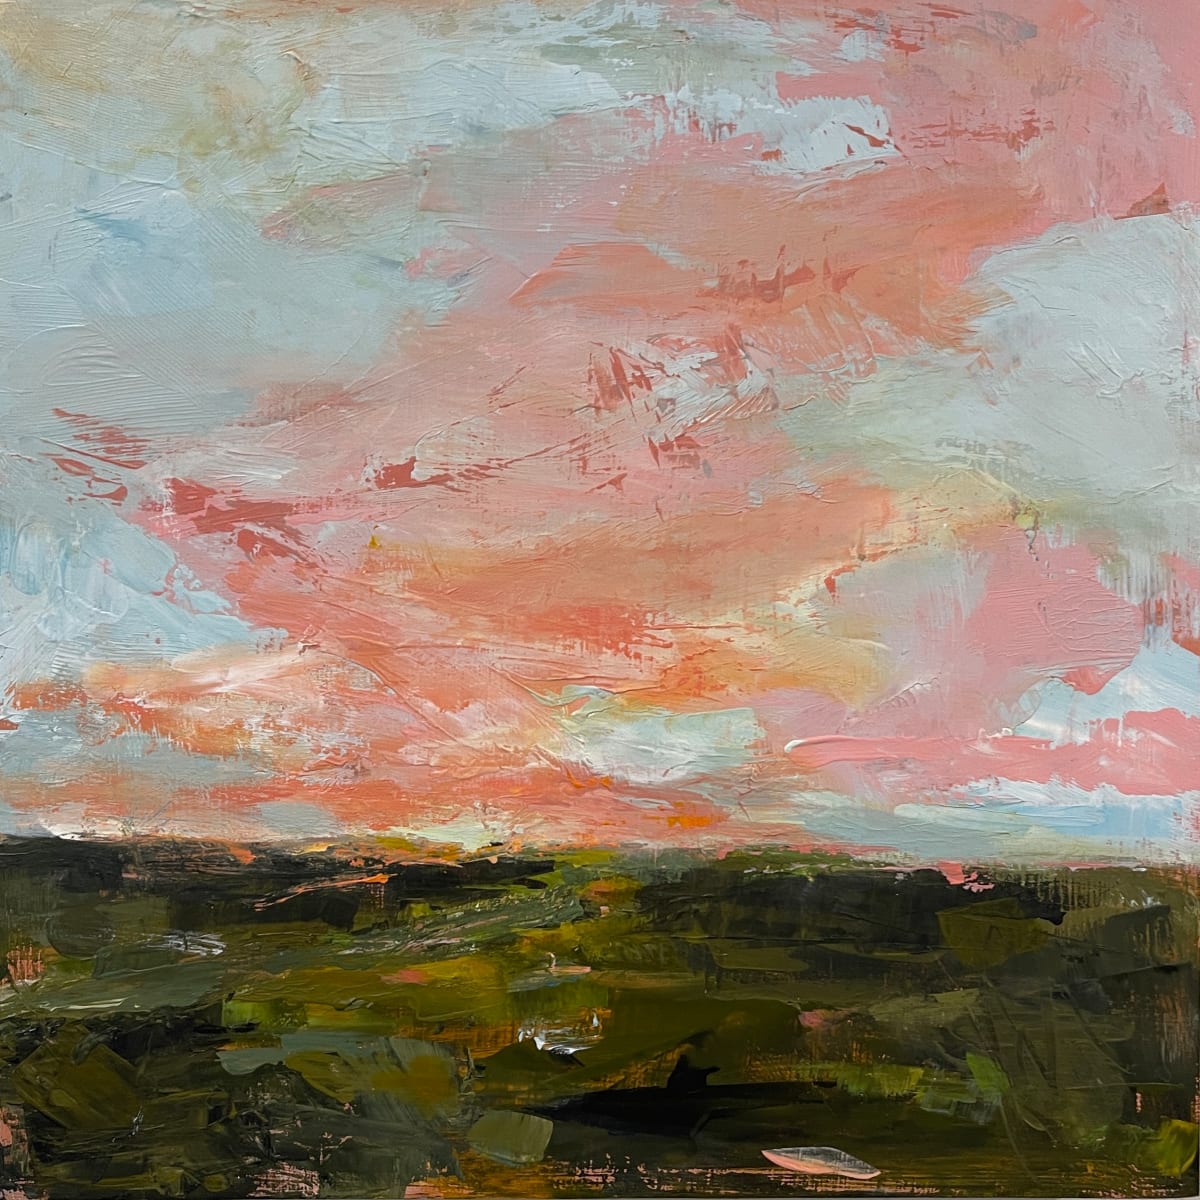 Landscape in Pink I by Kelly Dillard 